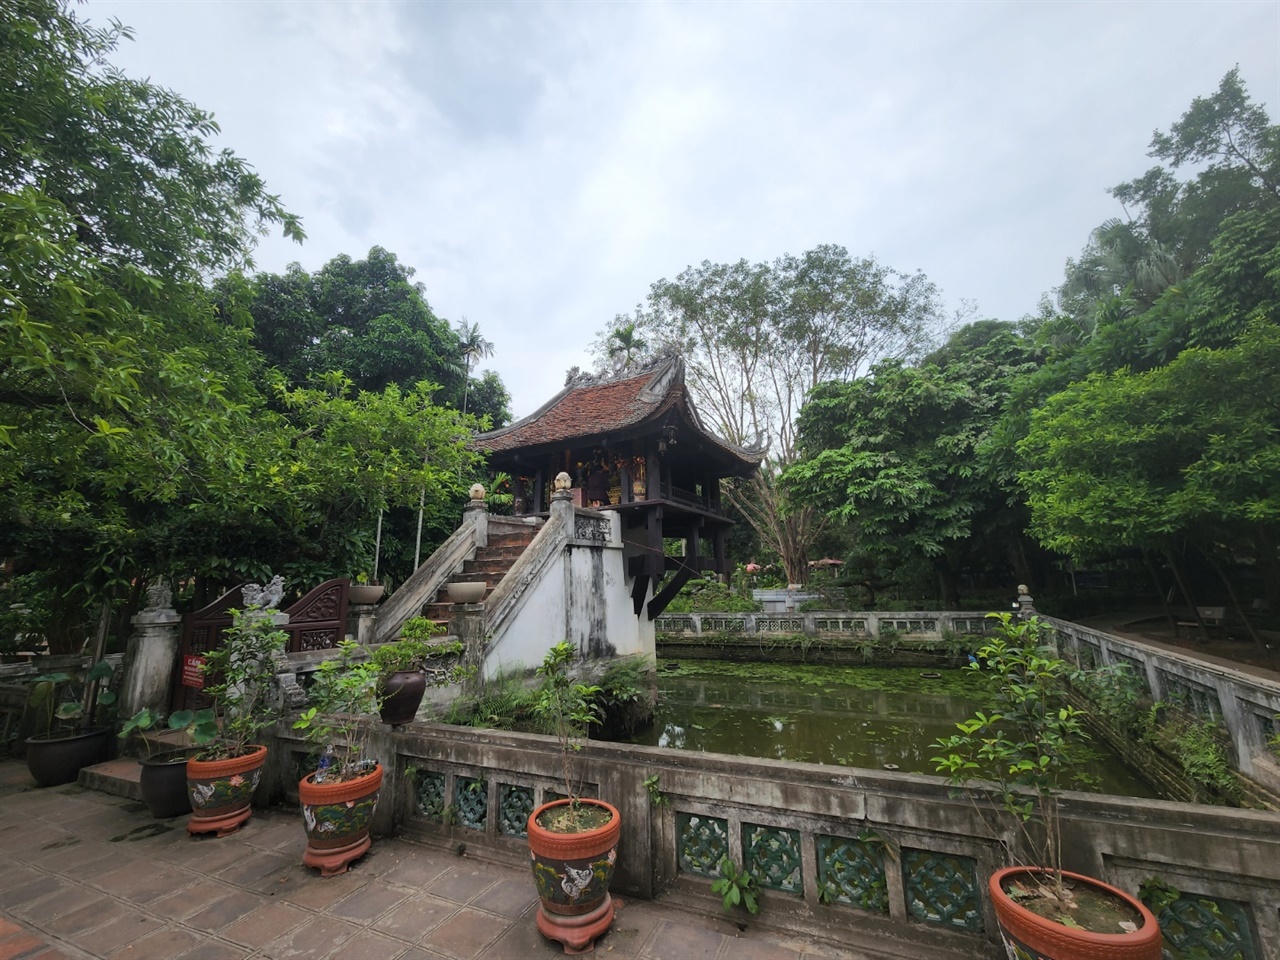 하노이 주석궁구역에 위치한 못꼿사원 즉, 한기둥사원은 하노이를 대표하는 건축물 중 하나다. 